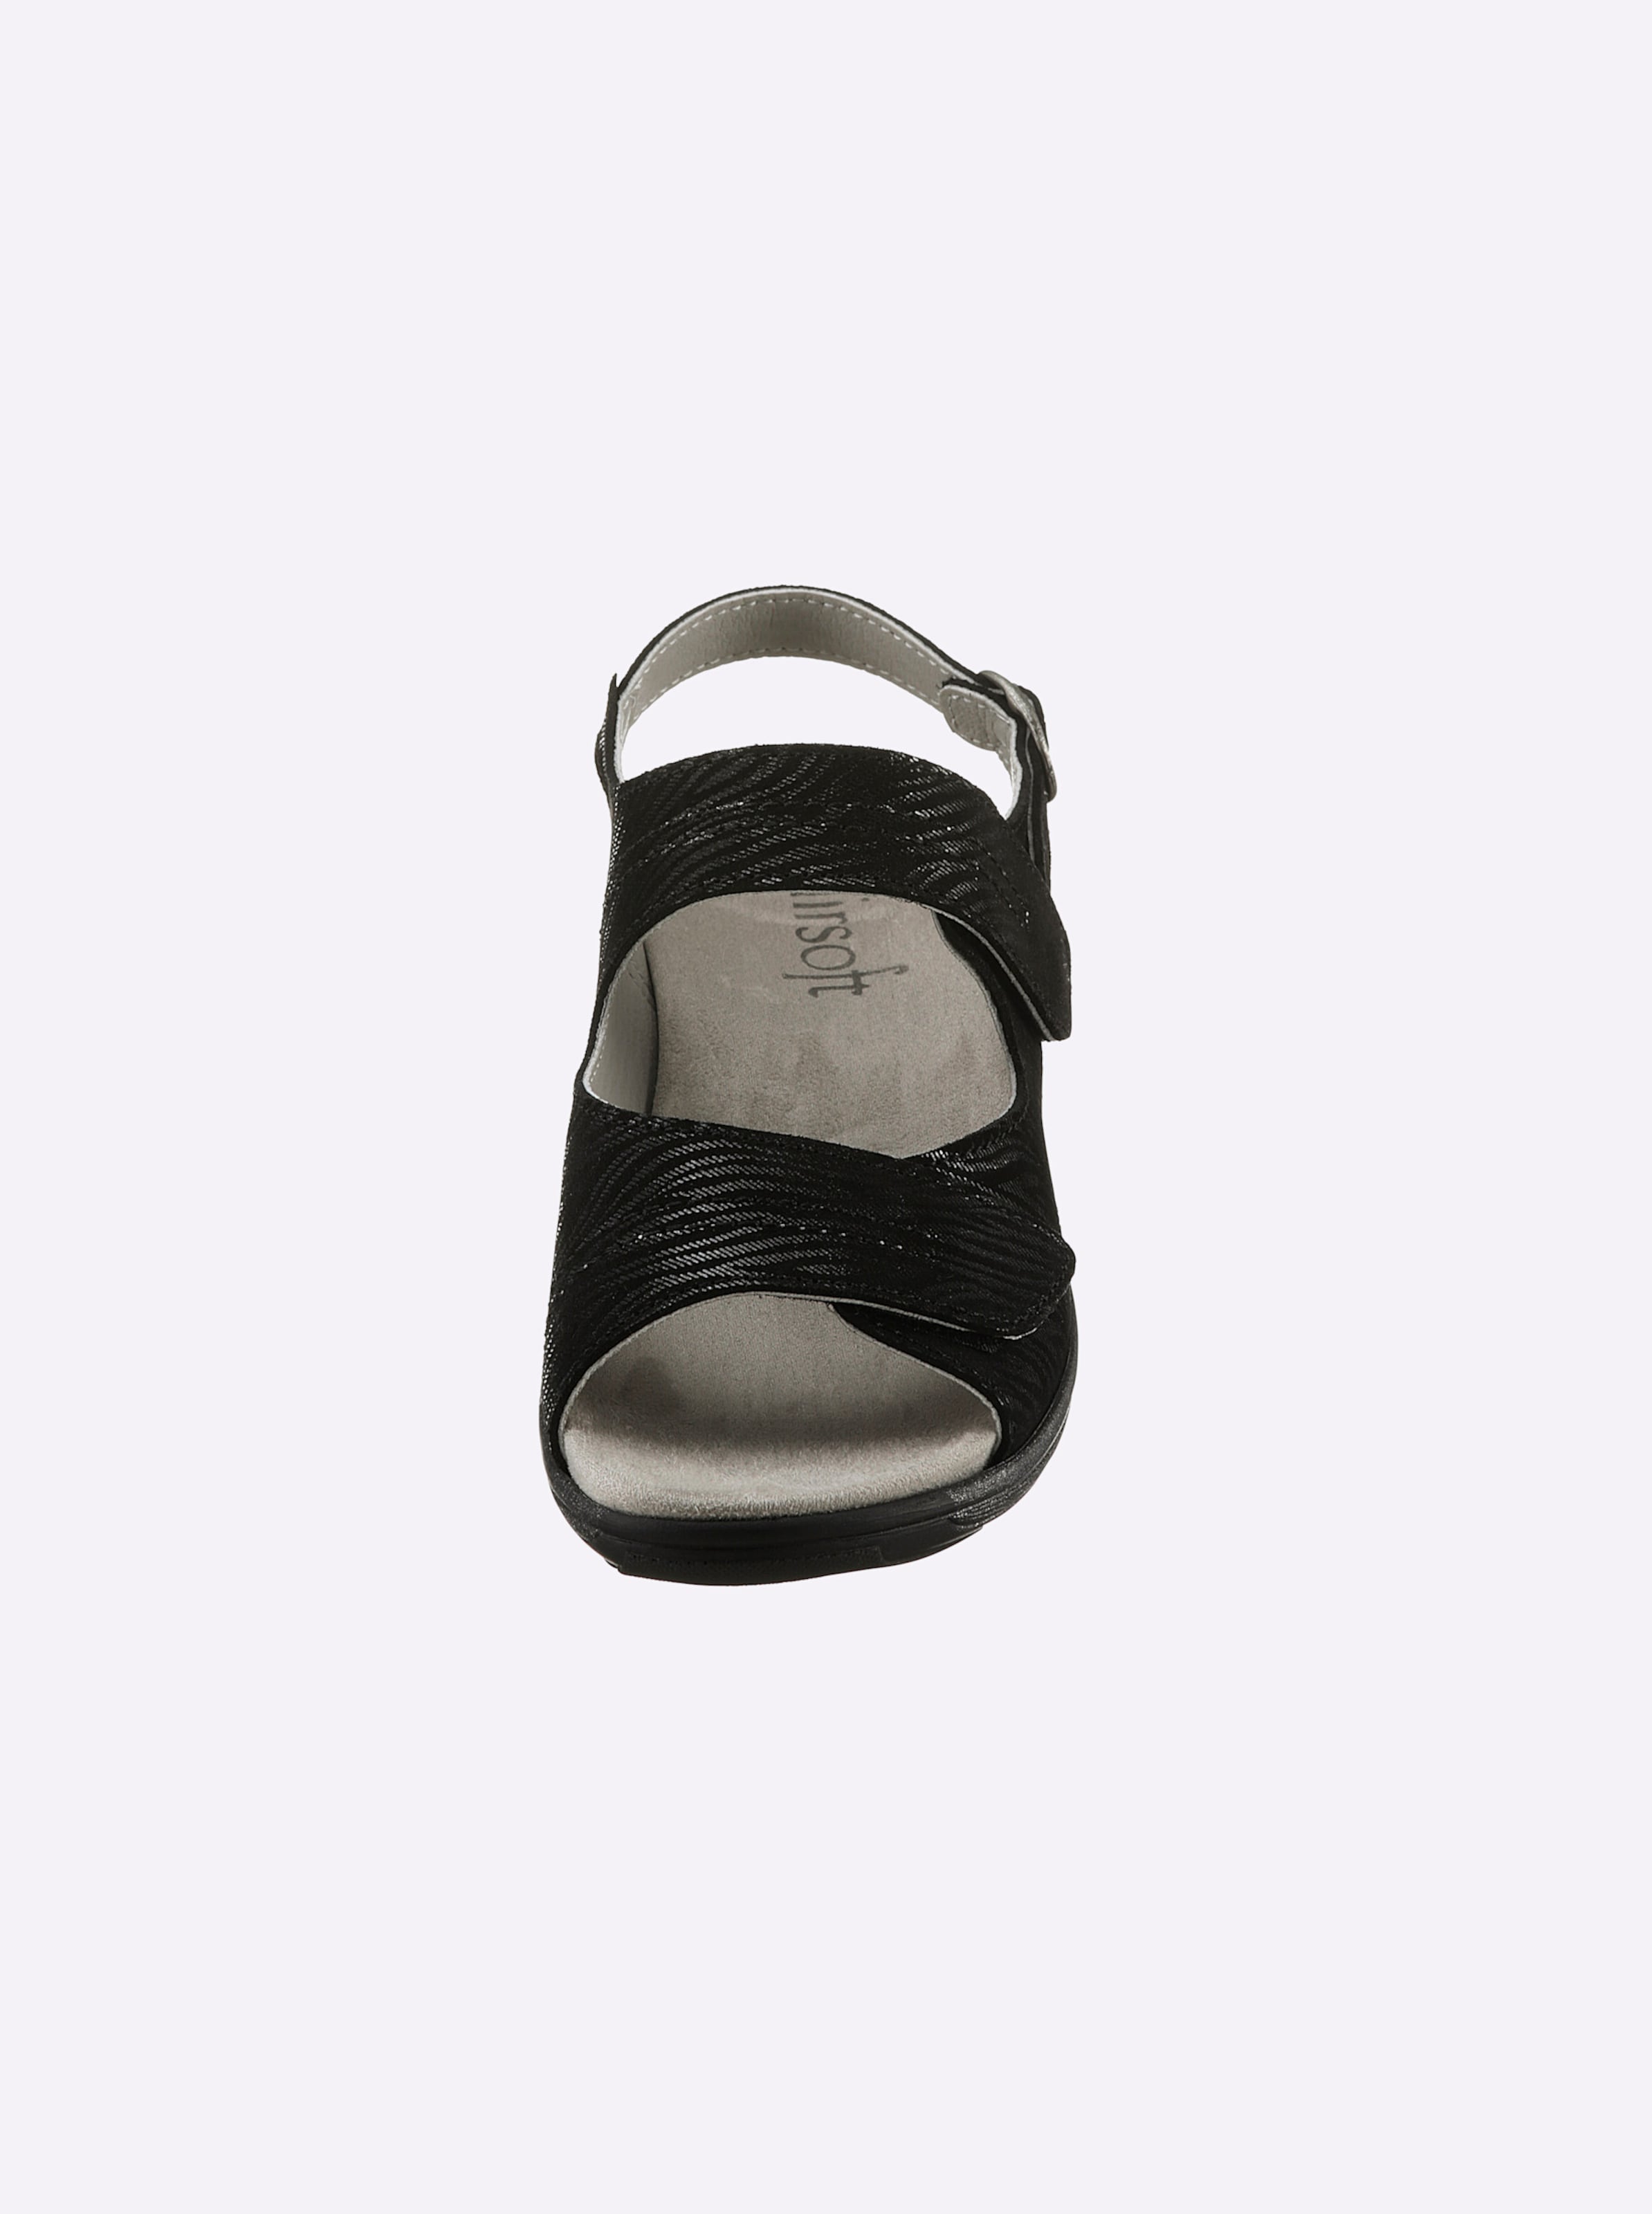 und Leder günstig Kaufen-Sandalette in schwarz von airsoft comfort+. Sandalette in schwarz von airsoft comfort+ <![CDATA[Ganz im Trend und auch noch super bequem! Sandalette von airsoft comfort+ mit geprägtem, edel schimmerndem Zebra-Muster auf hochwertigem Glattleder. Innen aus